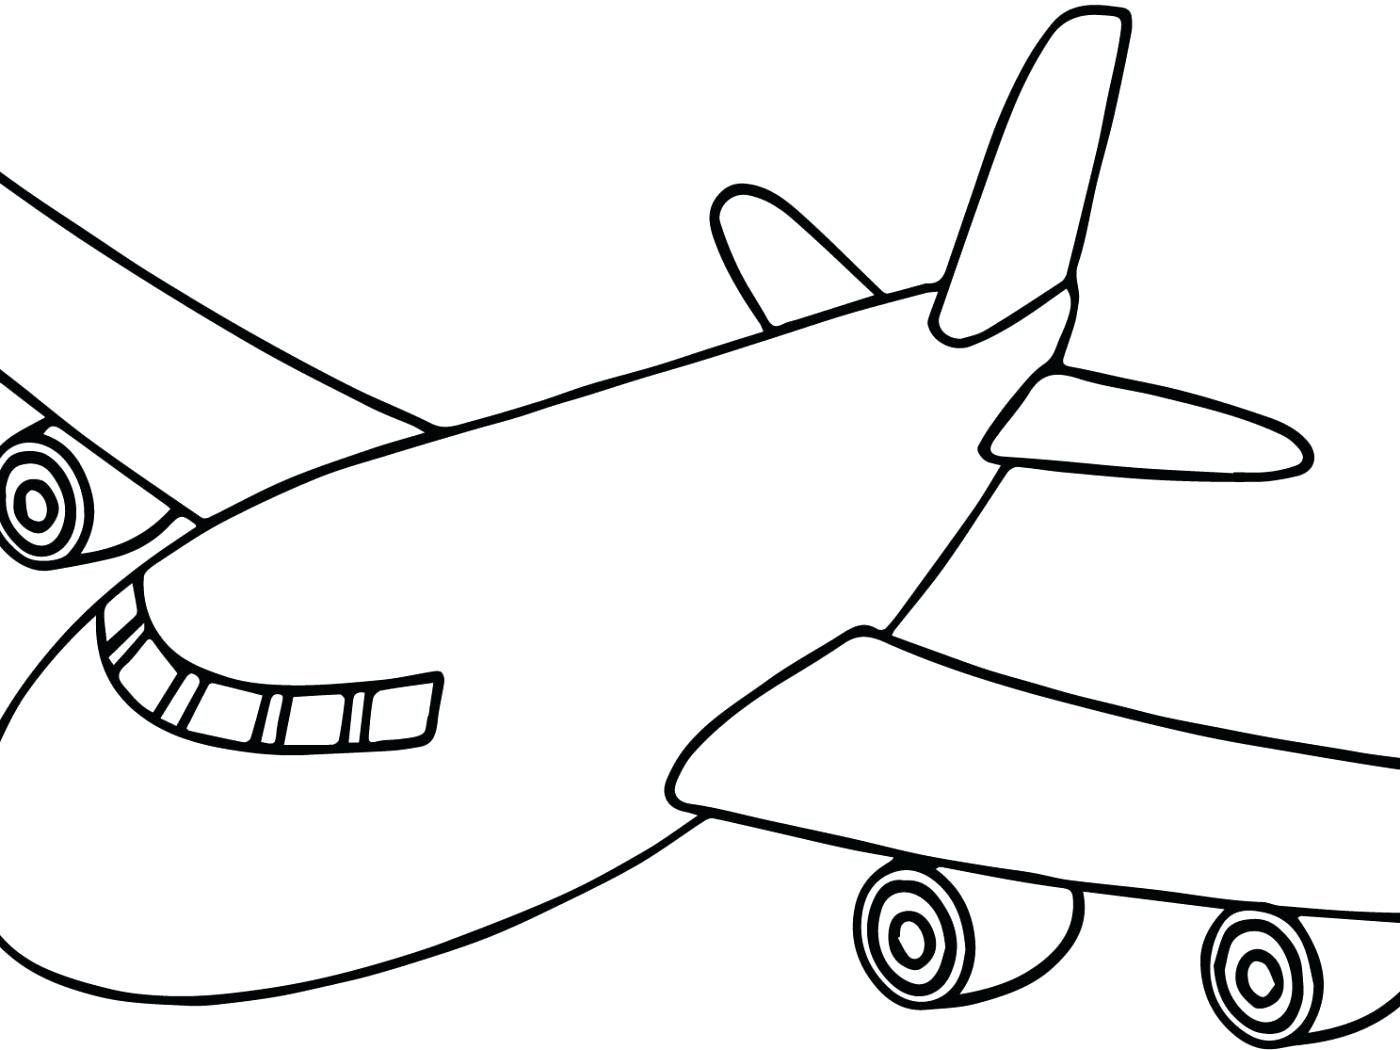 Покажи рисунки самолета. Самолет раскраска для детей. Самолетик раскраска для детей. Самолет рисунок раскраска. Самолет для раскрашивания для детей.